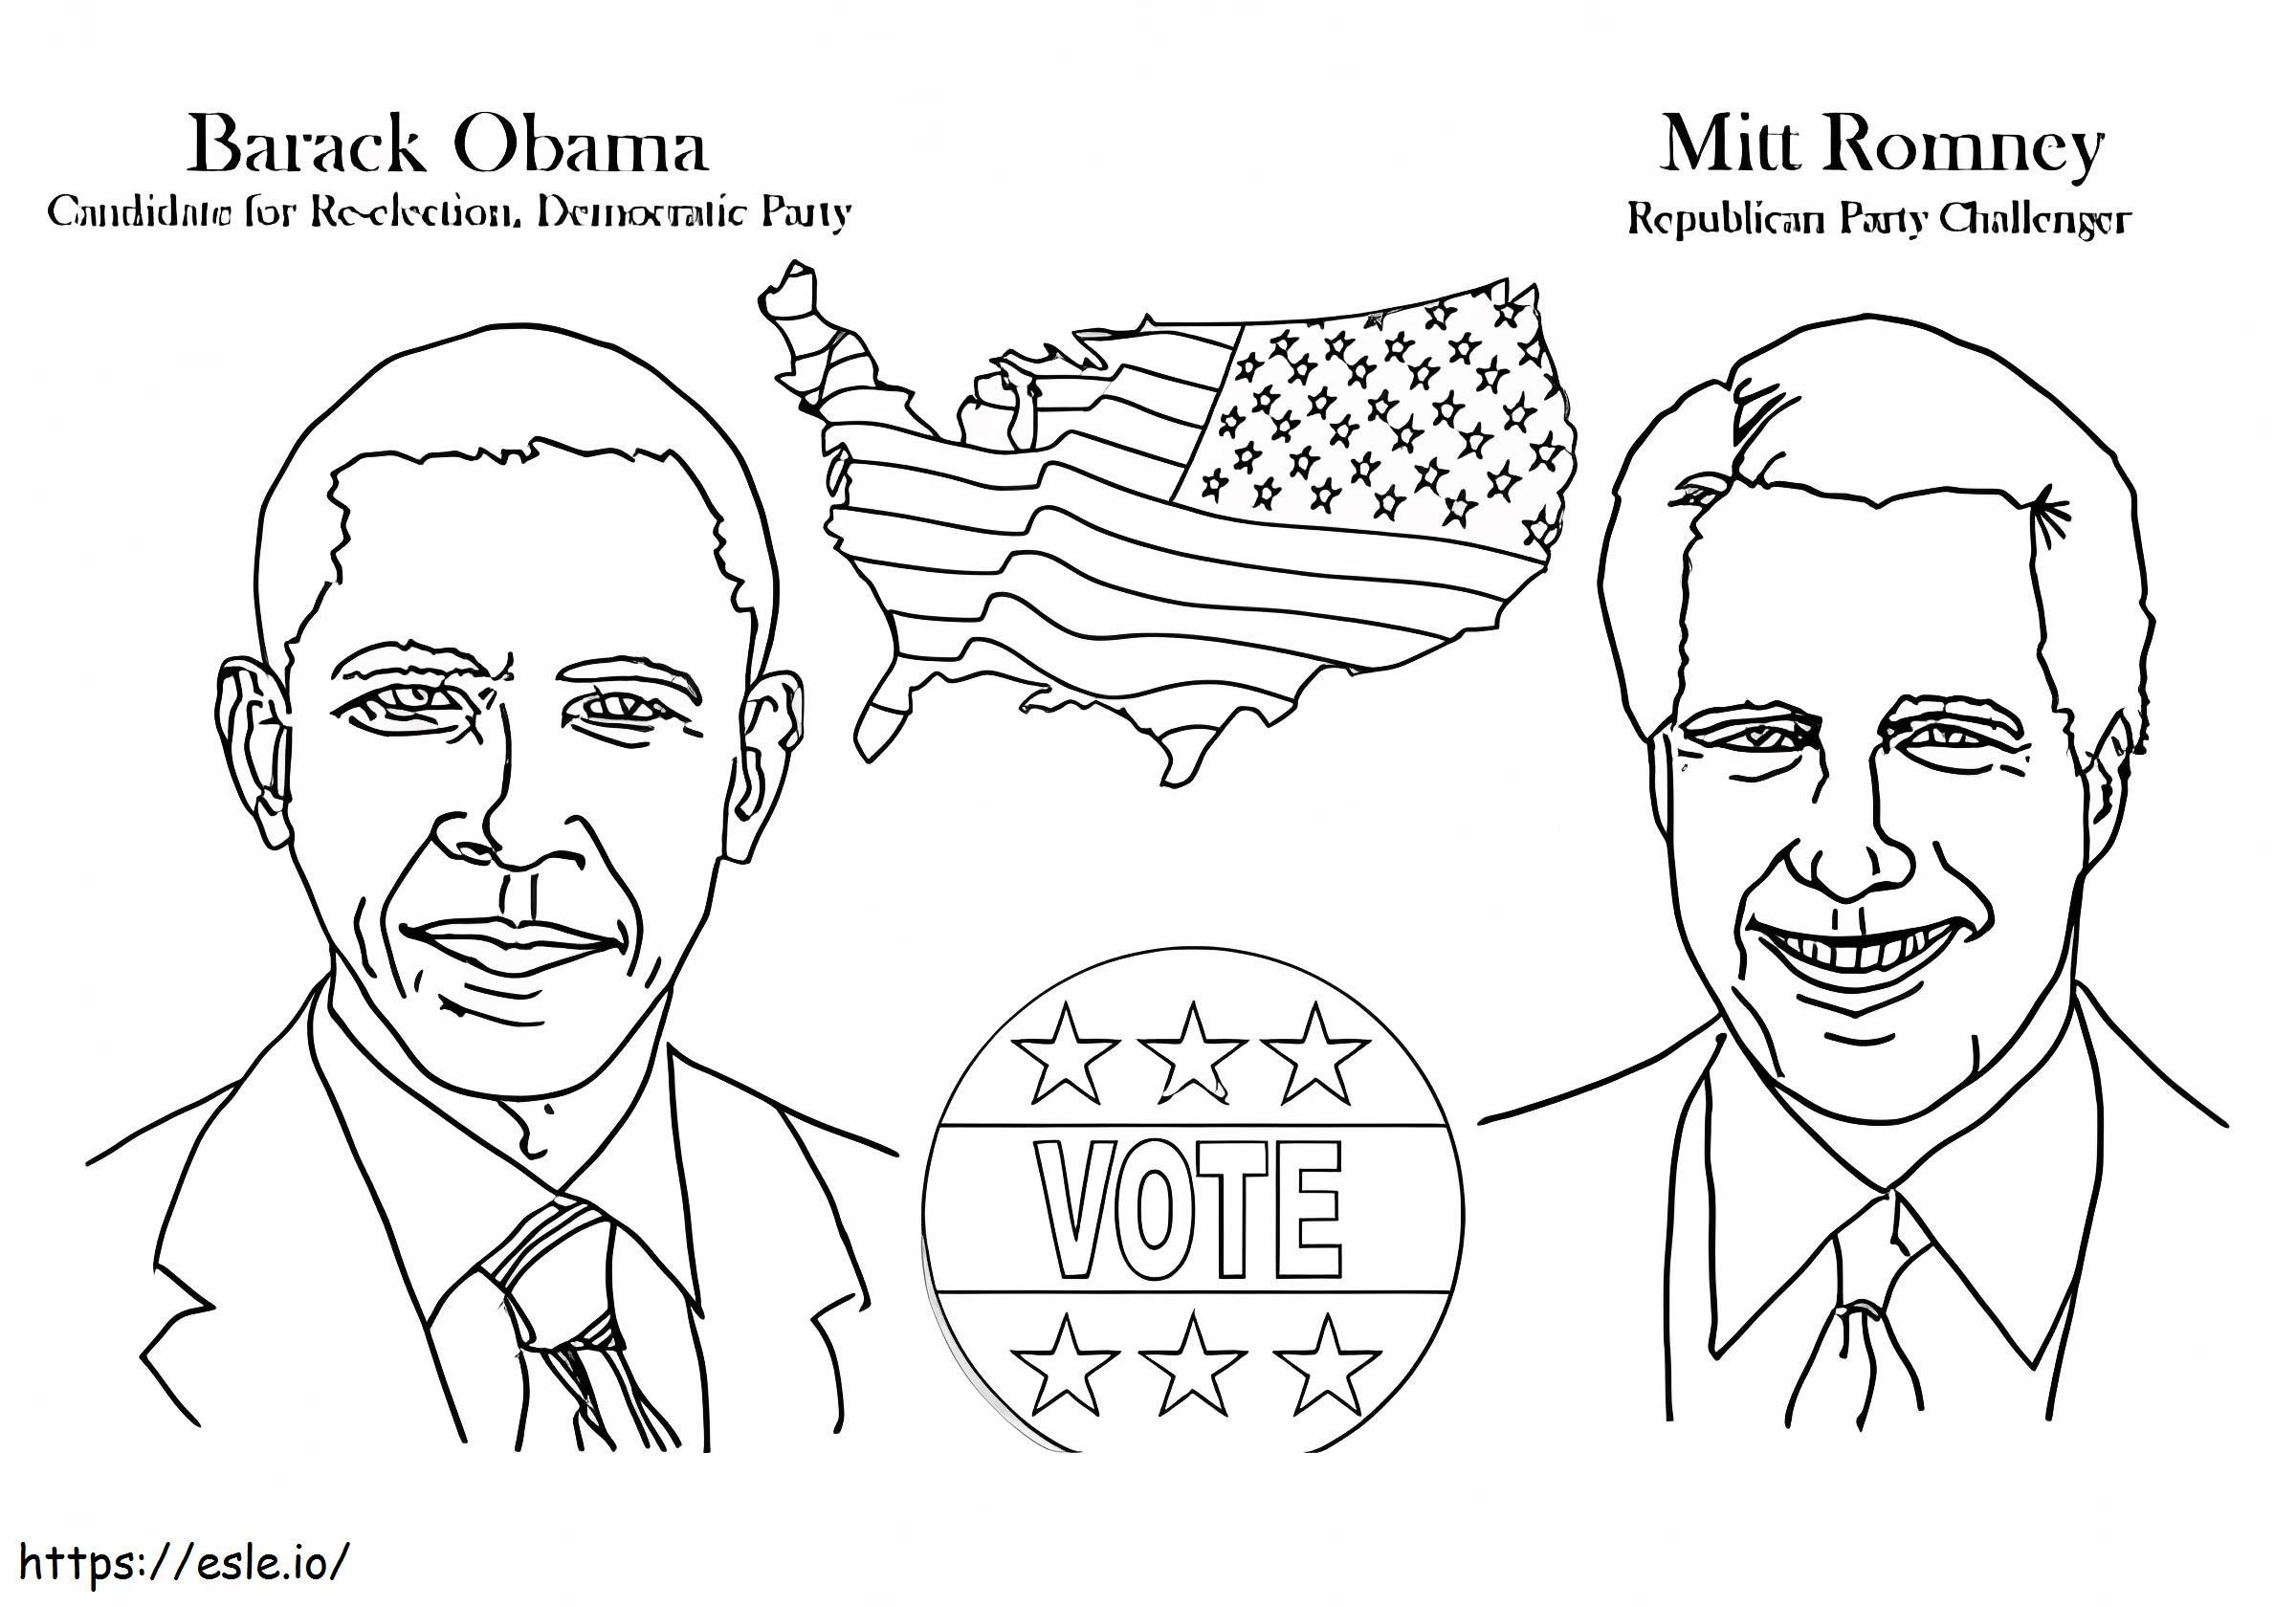 Barack Obama és Mitt Romney kifestő